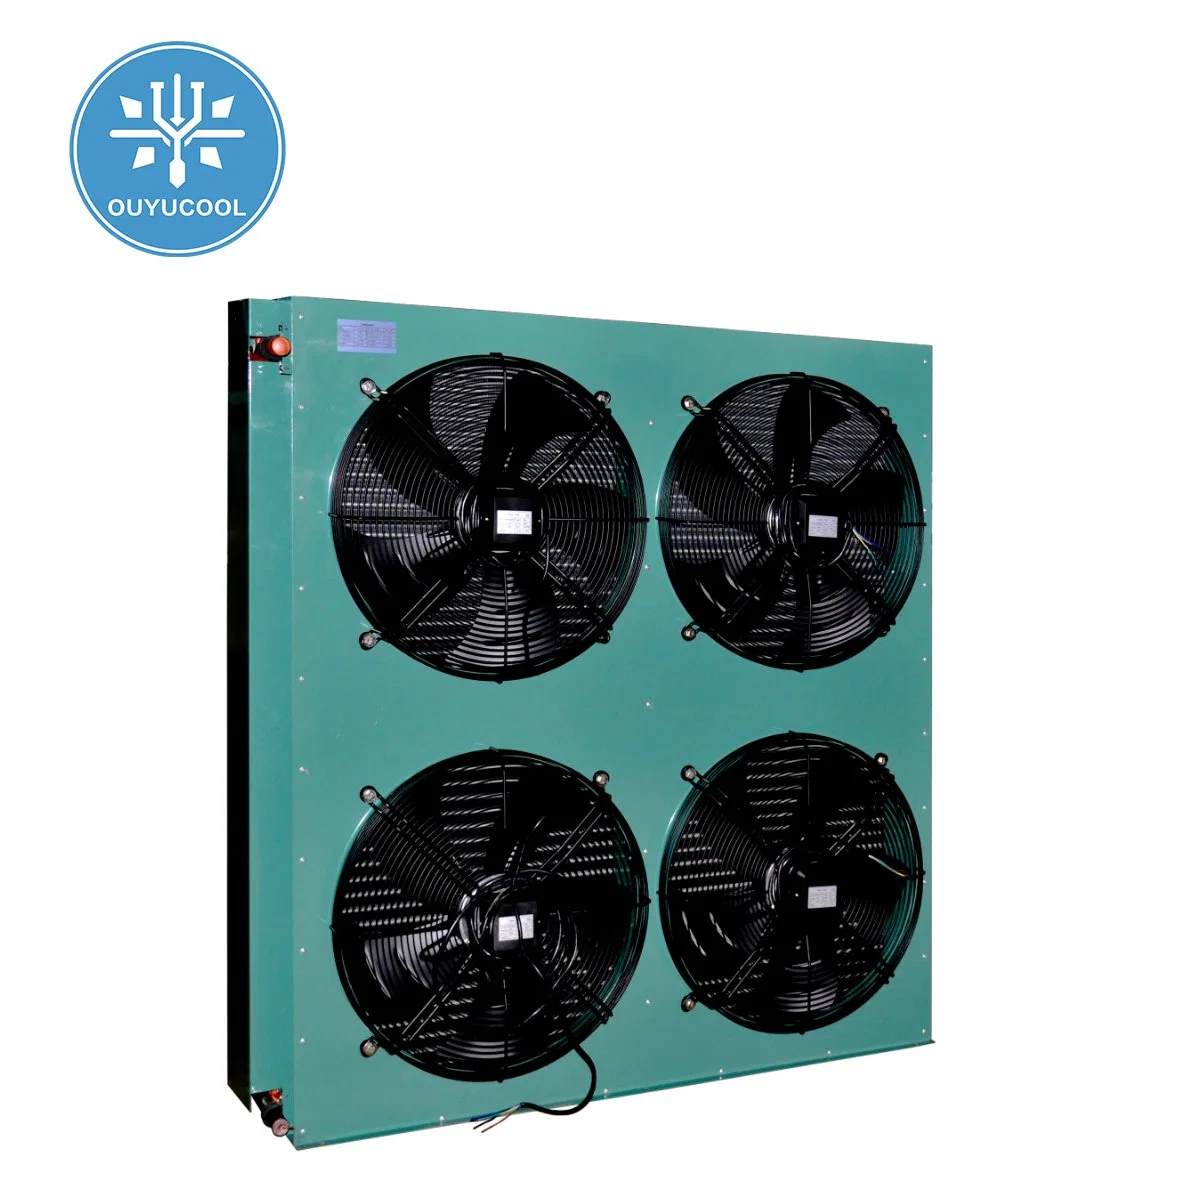 Condensador silencioso y eficiente Venta en caliente equipos de refrigeración